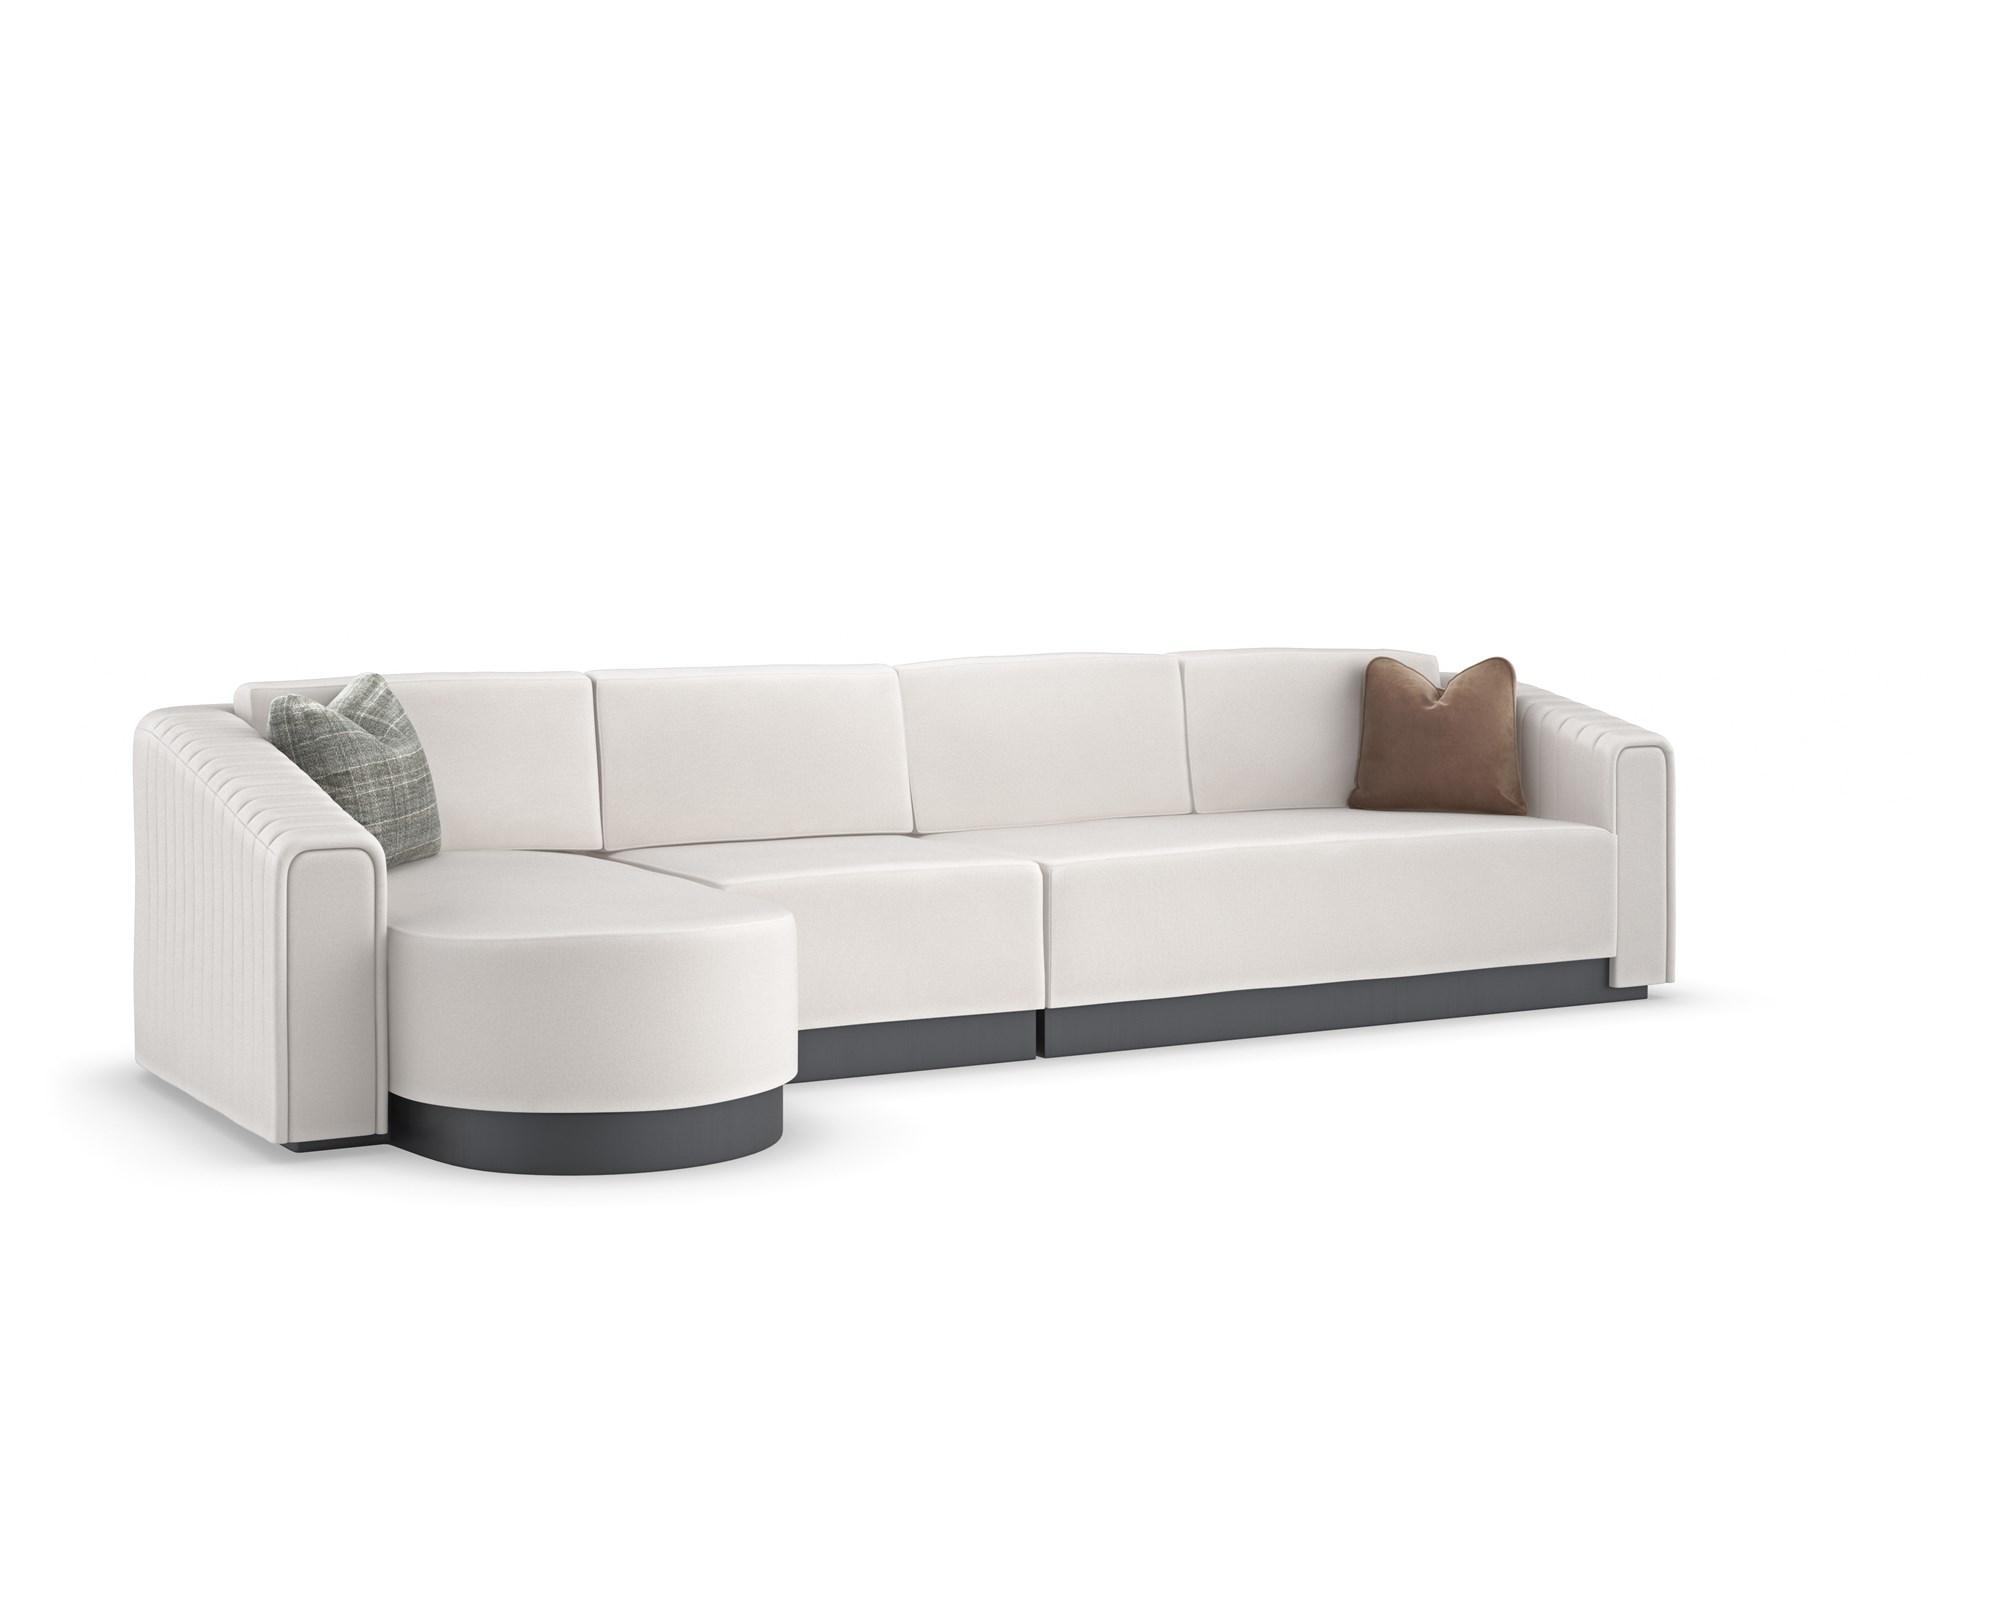 Contemporary Sectional Sofa LA MODA LA MODA-3PC SECTIONAL in White Fabric